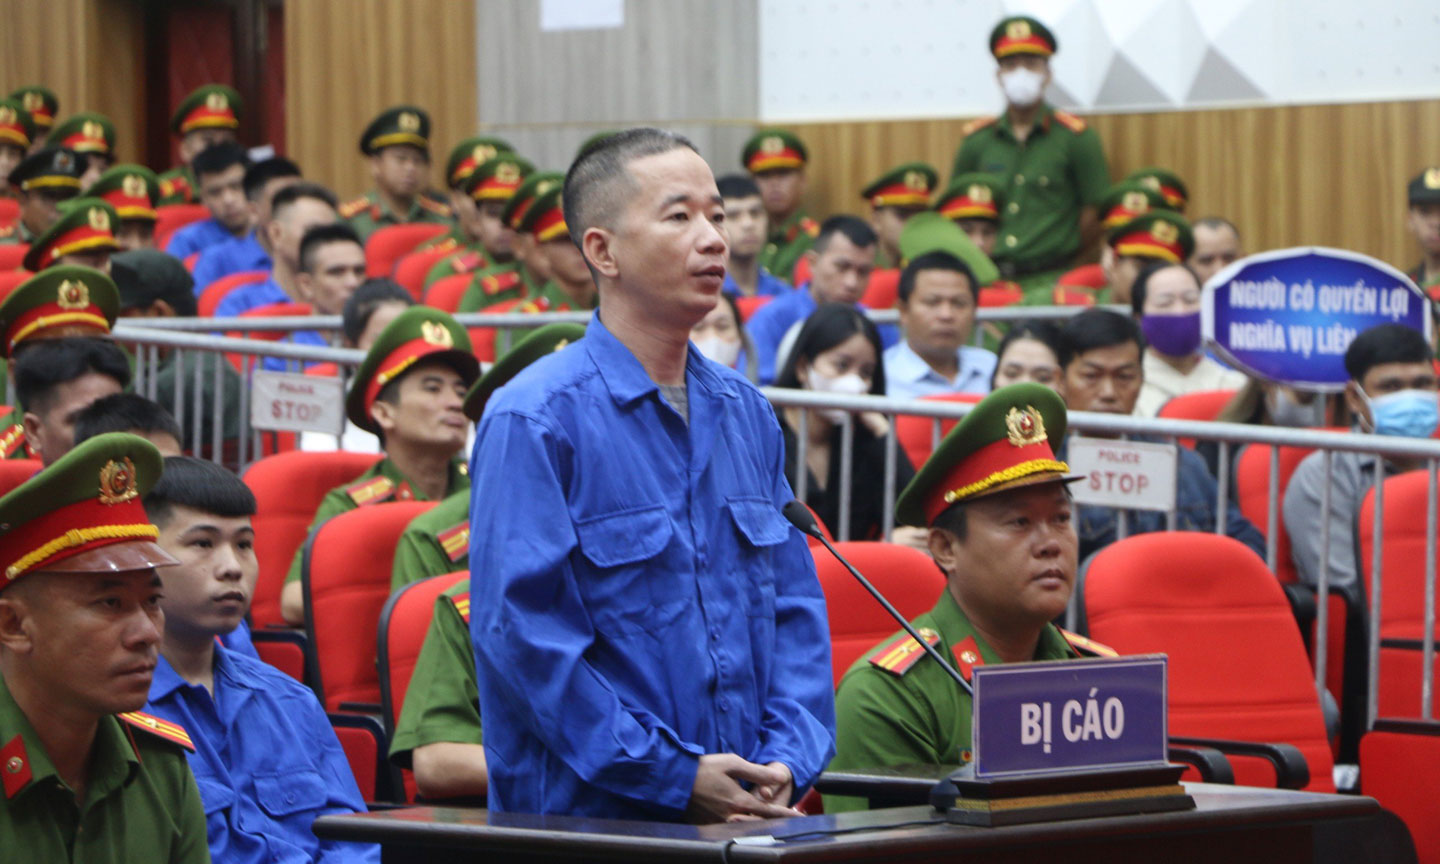 Bị cáo Nguyễn Văn Thái (còn gọi là Thái Bus) tại phiên tòa.